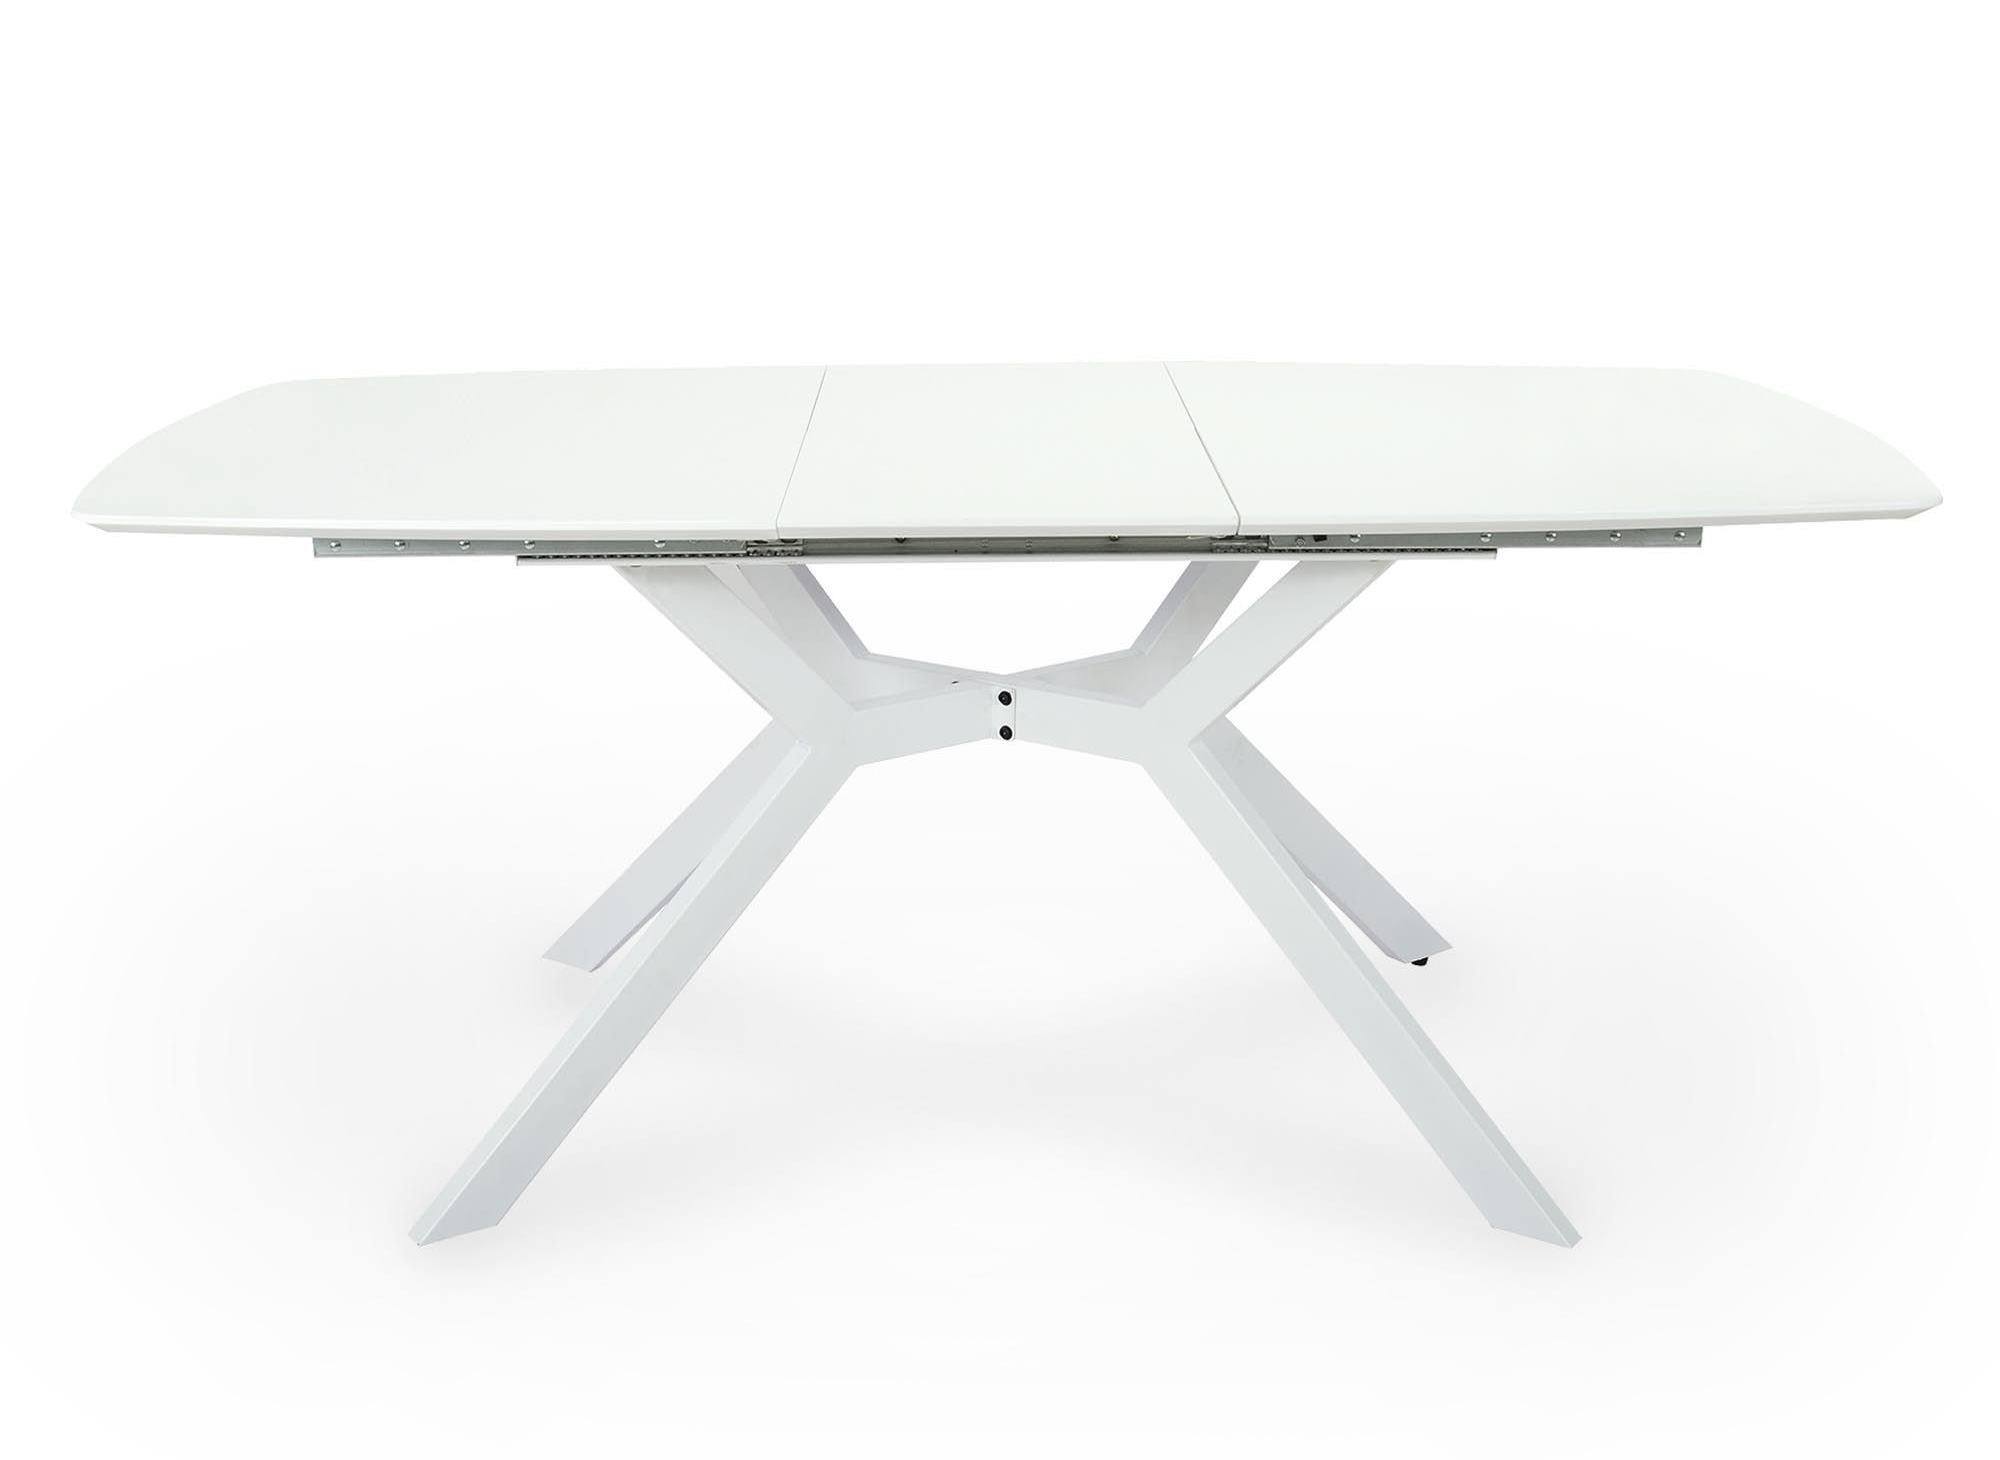 https://www.decoinparis.com/img/produit/23292-table-a-manger-extensible-laque-blanc-pieds-metal-4-6-personnes-araxie.jpg